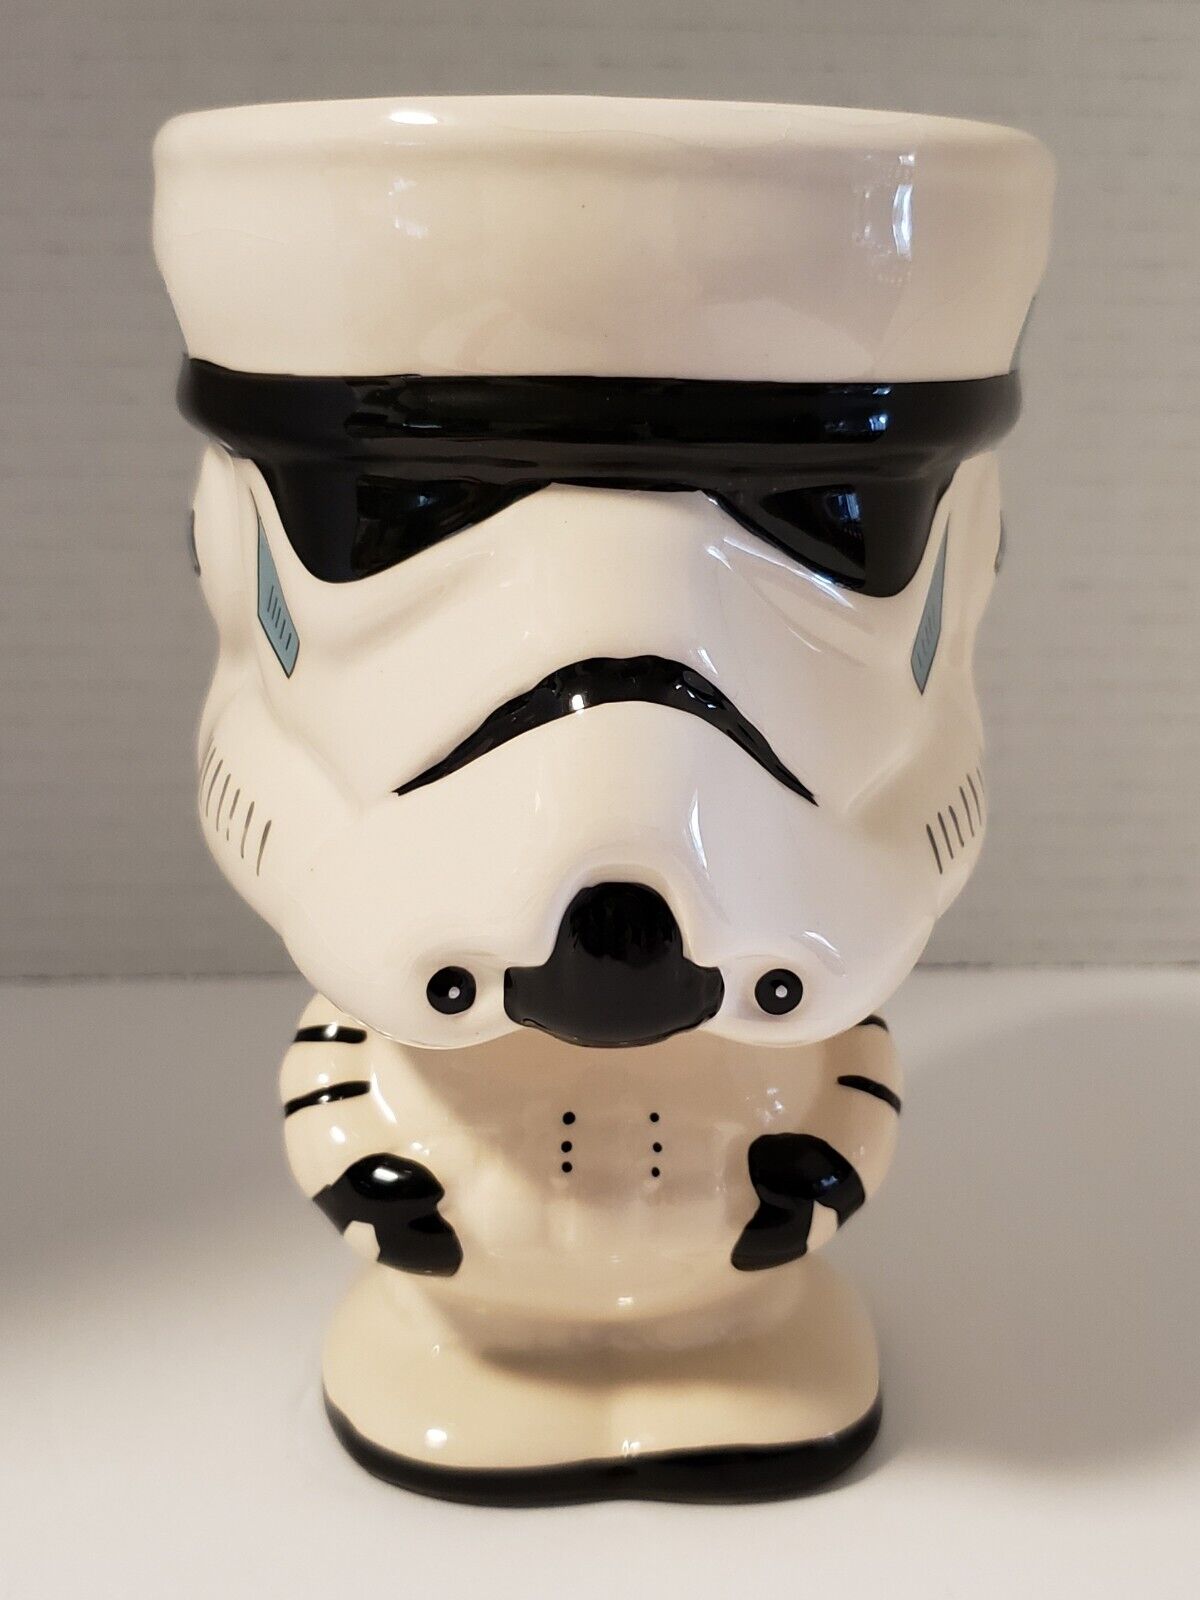 Star Wars Galerie Storm Trooper Ceramic Planter Goblet Mug Collectible